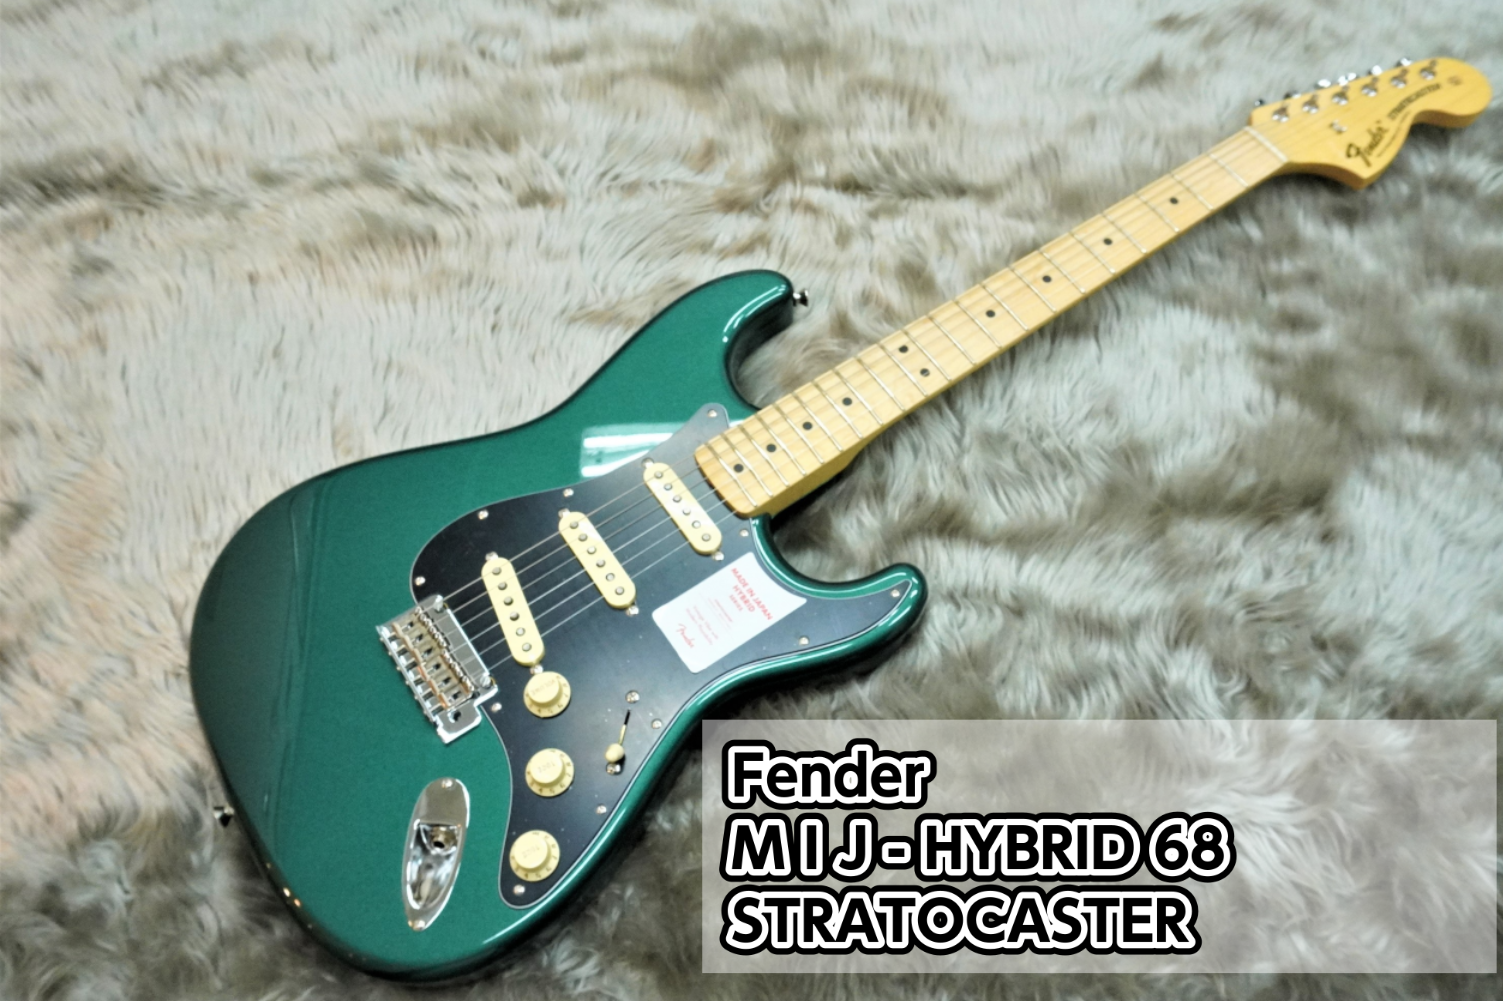 *MADE IN JAPAN HYBRID 68 STRATOCASTER入荷のご案内 Hybrid 68 Stratocasterは、フェンダーの定番モデルのルックスにモダンなスペックが調和したプレイヤーフレンドリーな楽器です。サテンフィニッシュの250mmラジアスネックはミディアムジャンボフレッ […]